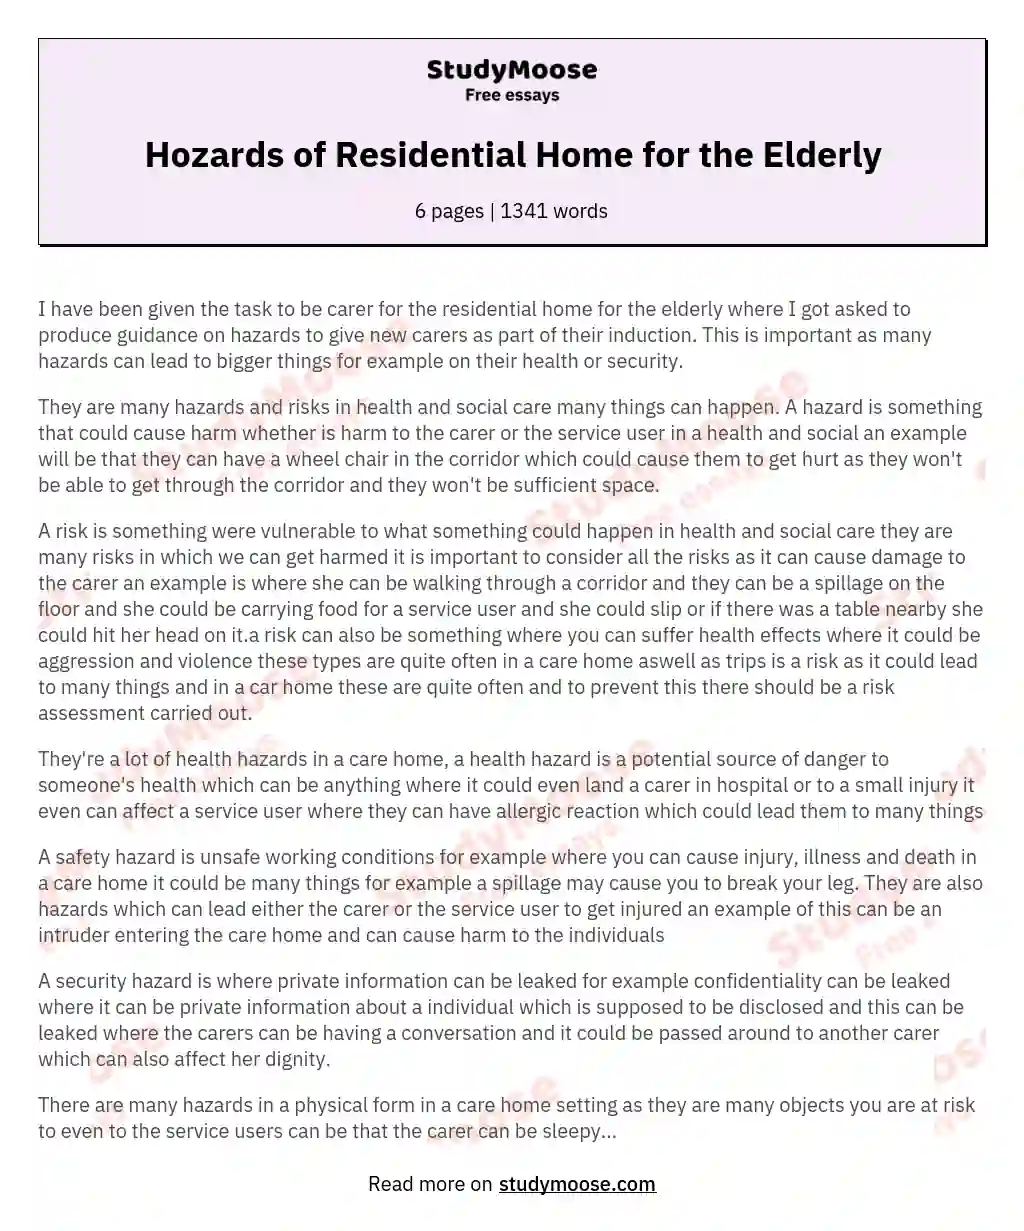 Hozards of Residential Home for the Elderly essay